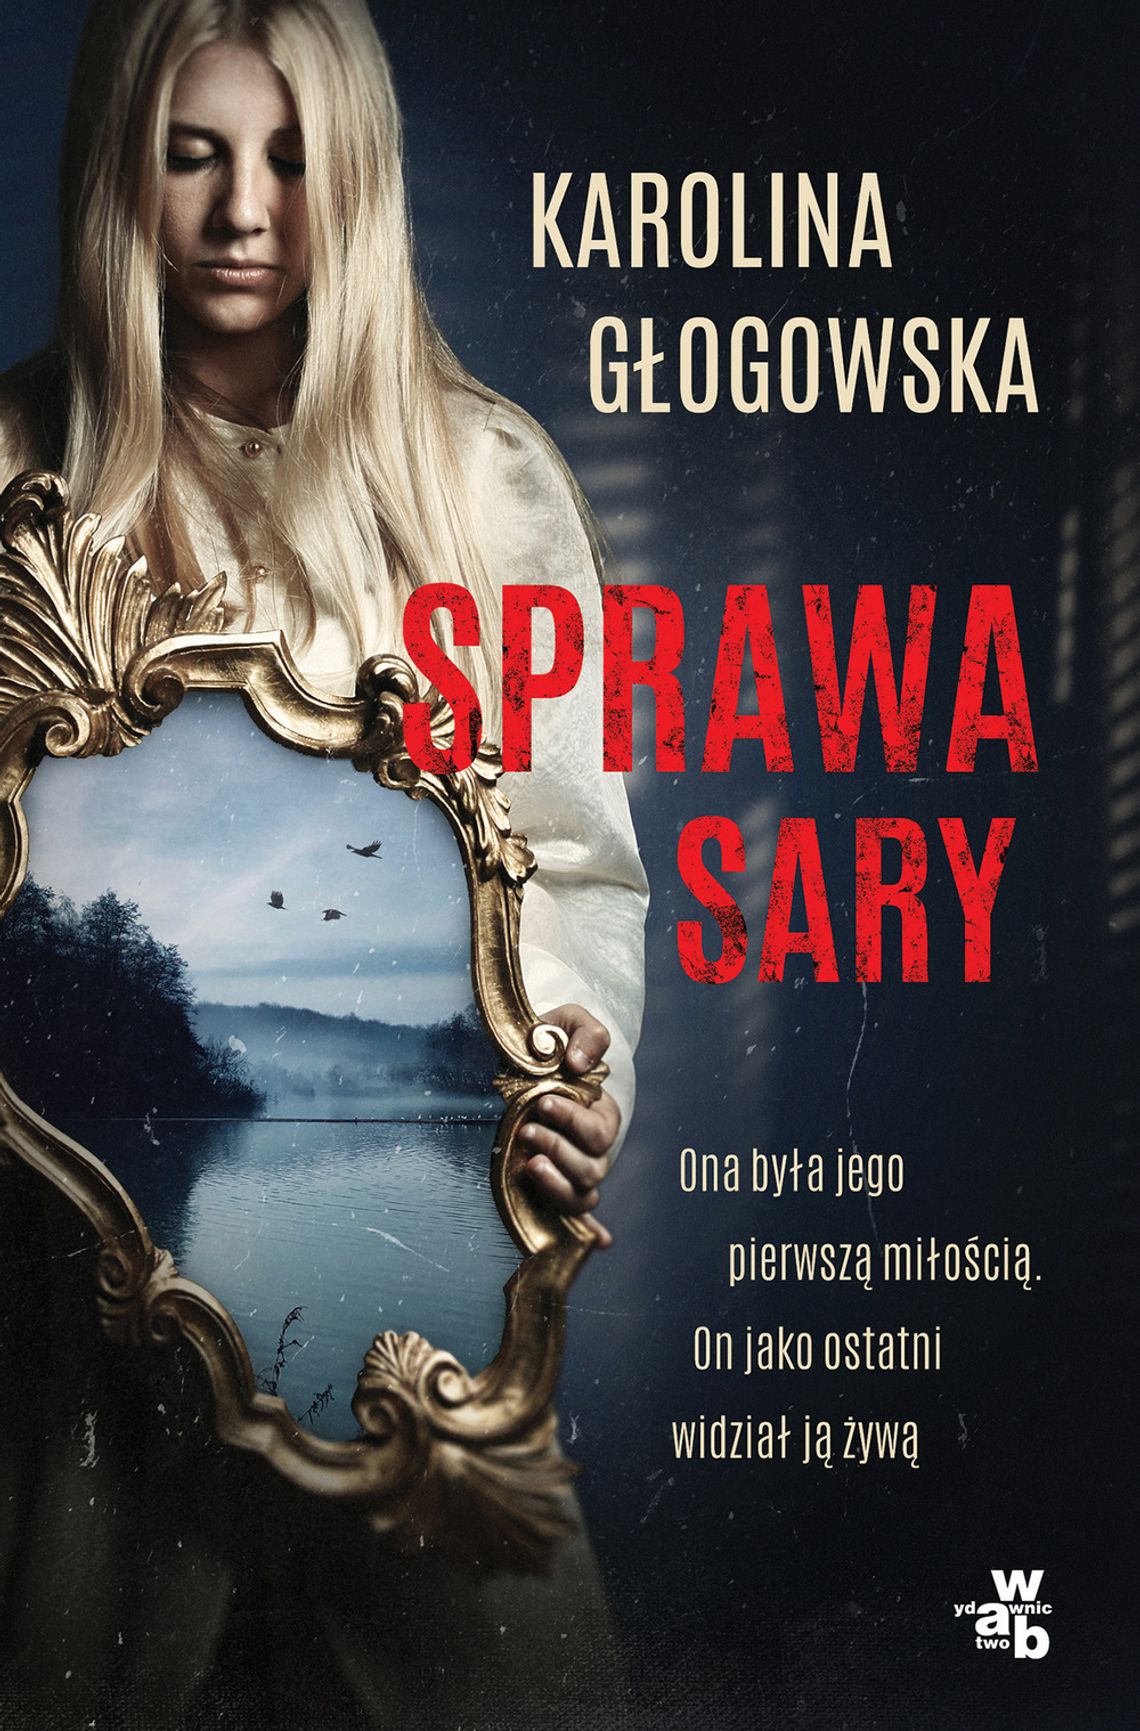 Karolina Głogowska - "Sprawa Sary"; wyd. w.a.b.